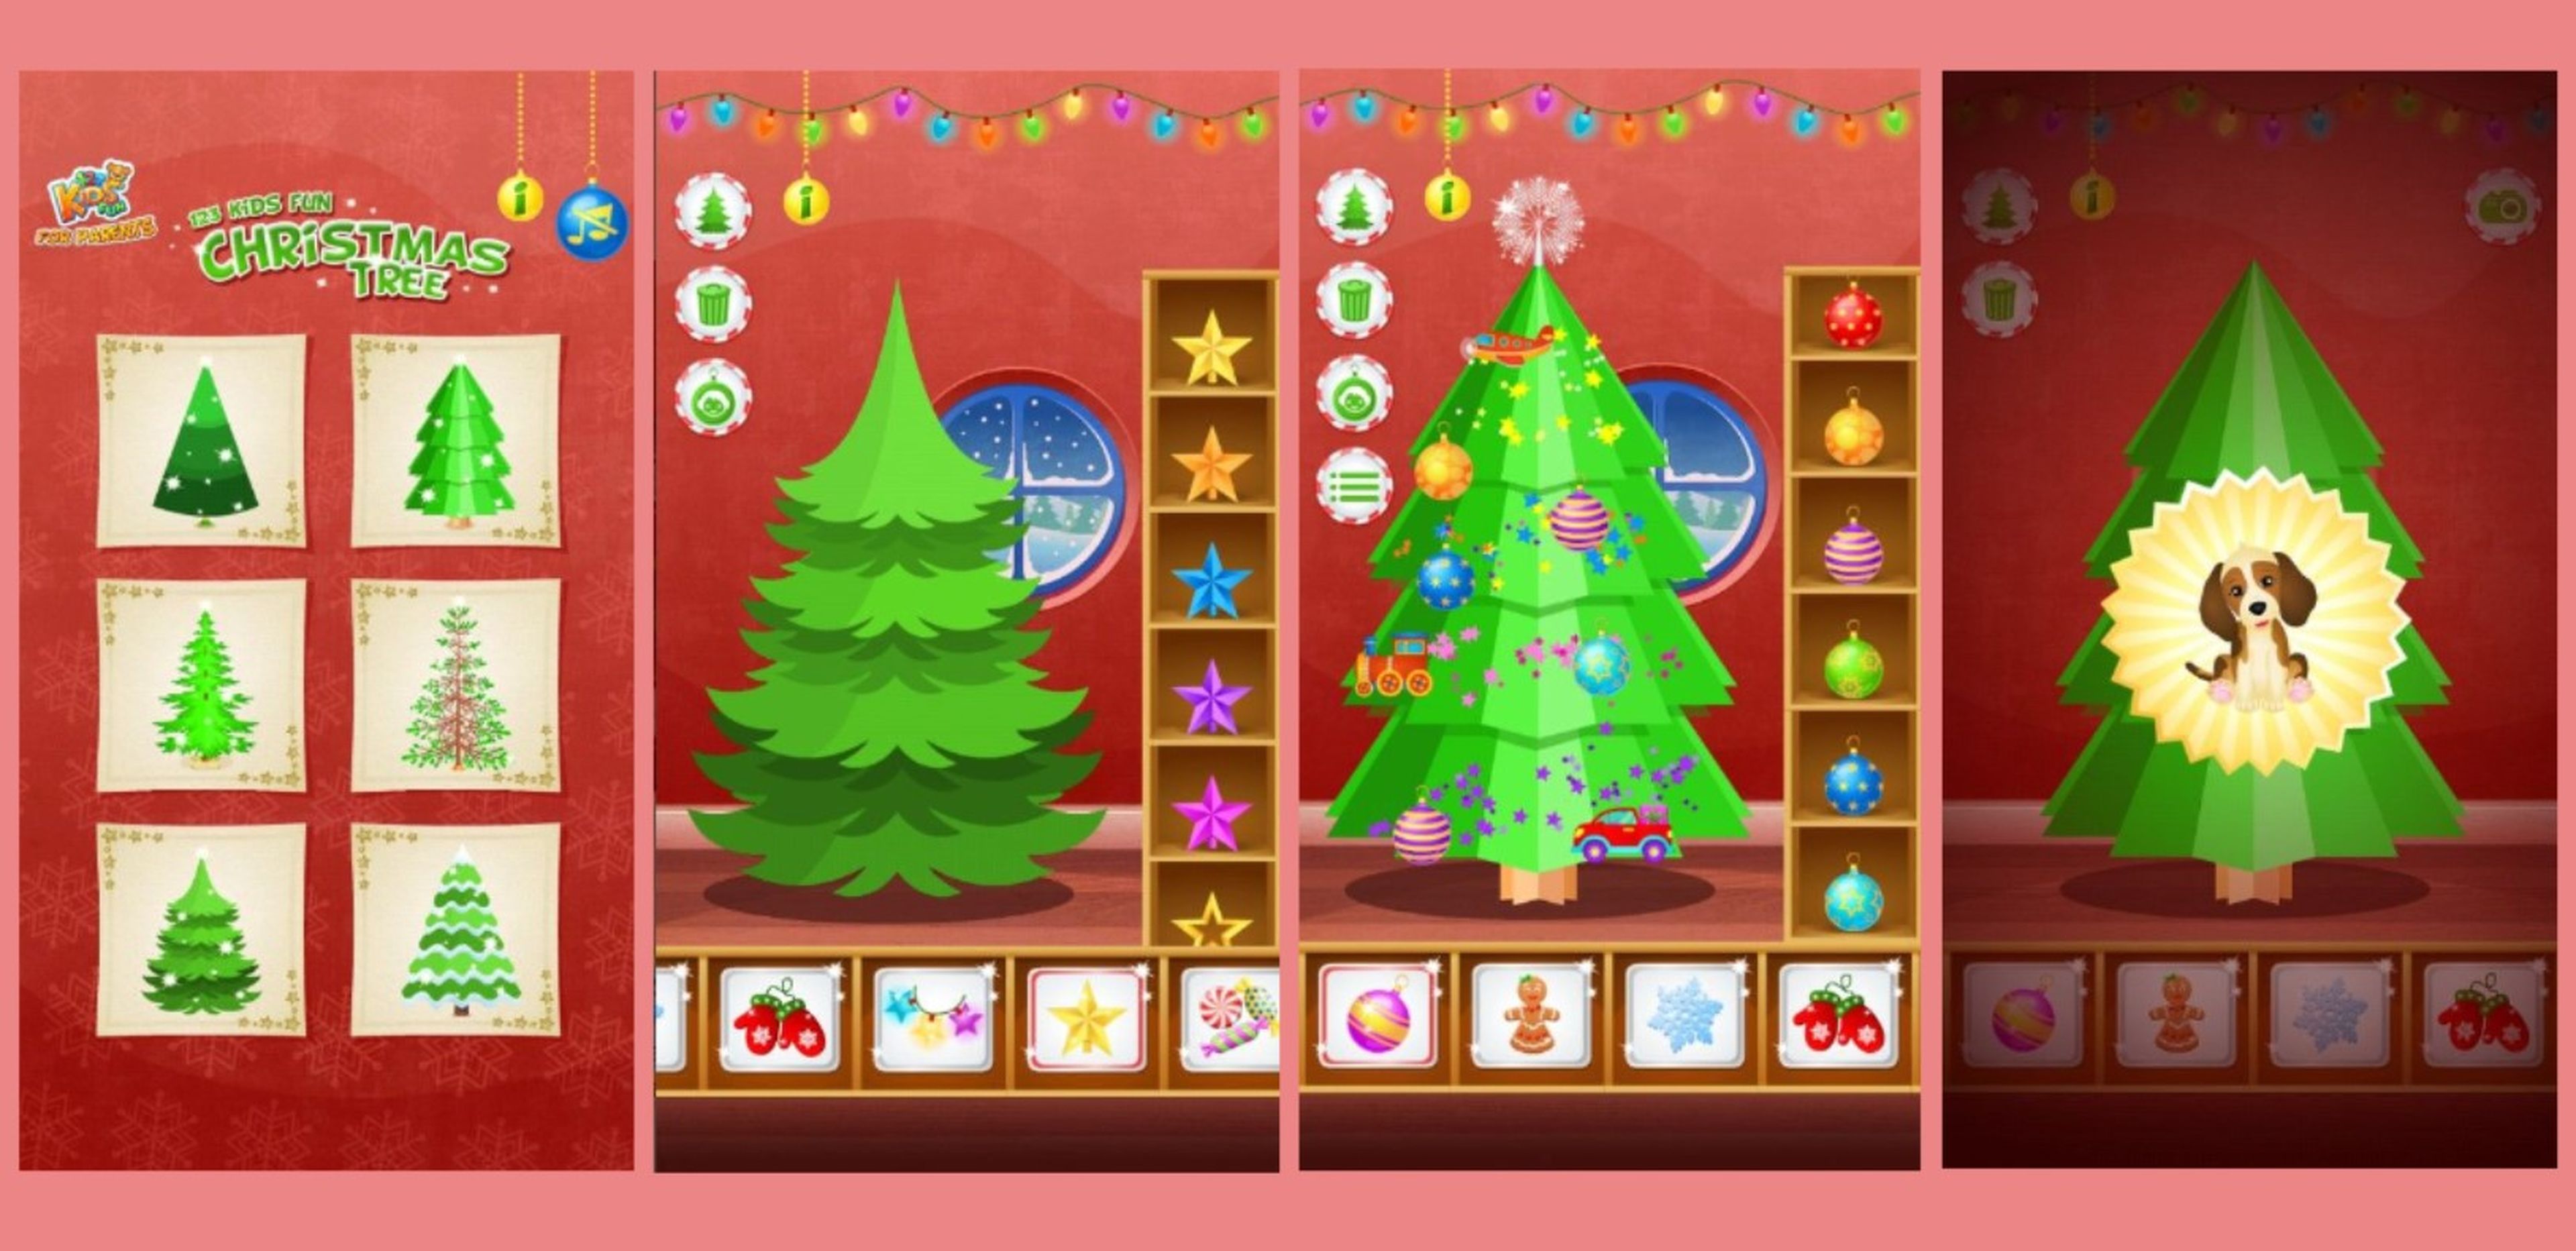 Apps y webs para crear manualidades de Navidad para decorar y entretener a los niños